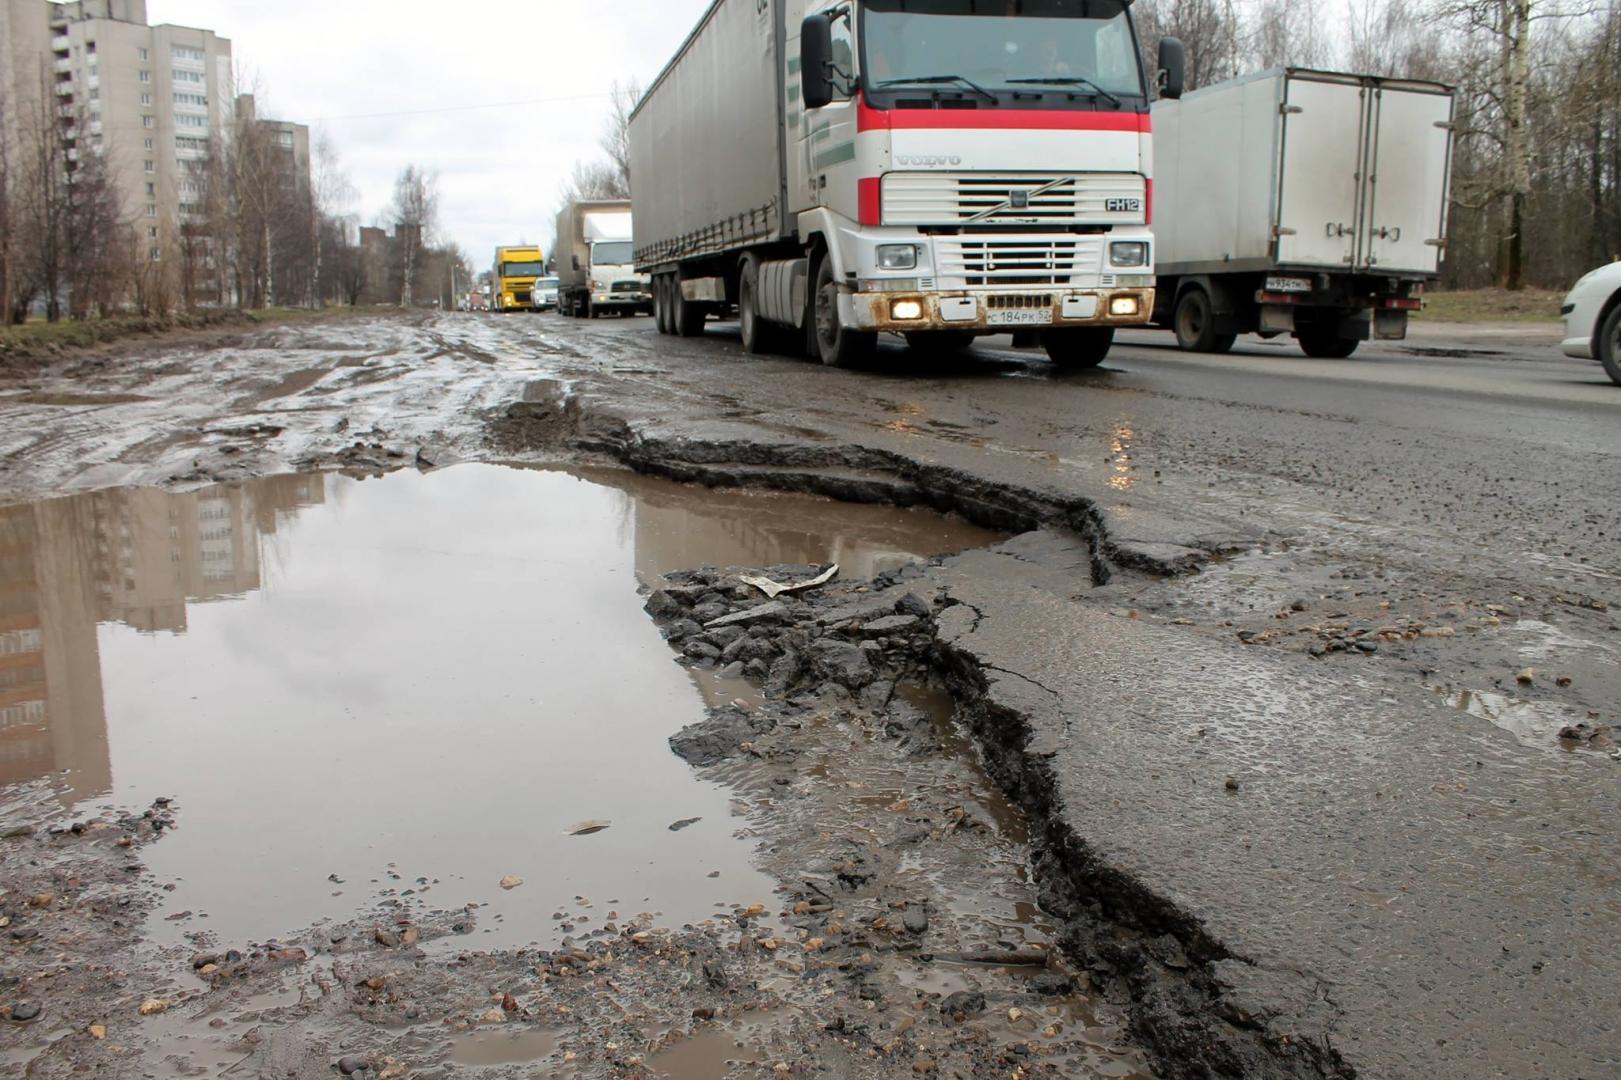 Плохое качество дороги. Плохие дороги Ярославля. Разбитая дорога. Российские дороги. Плохая дорога.